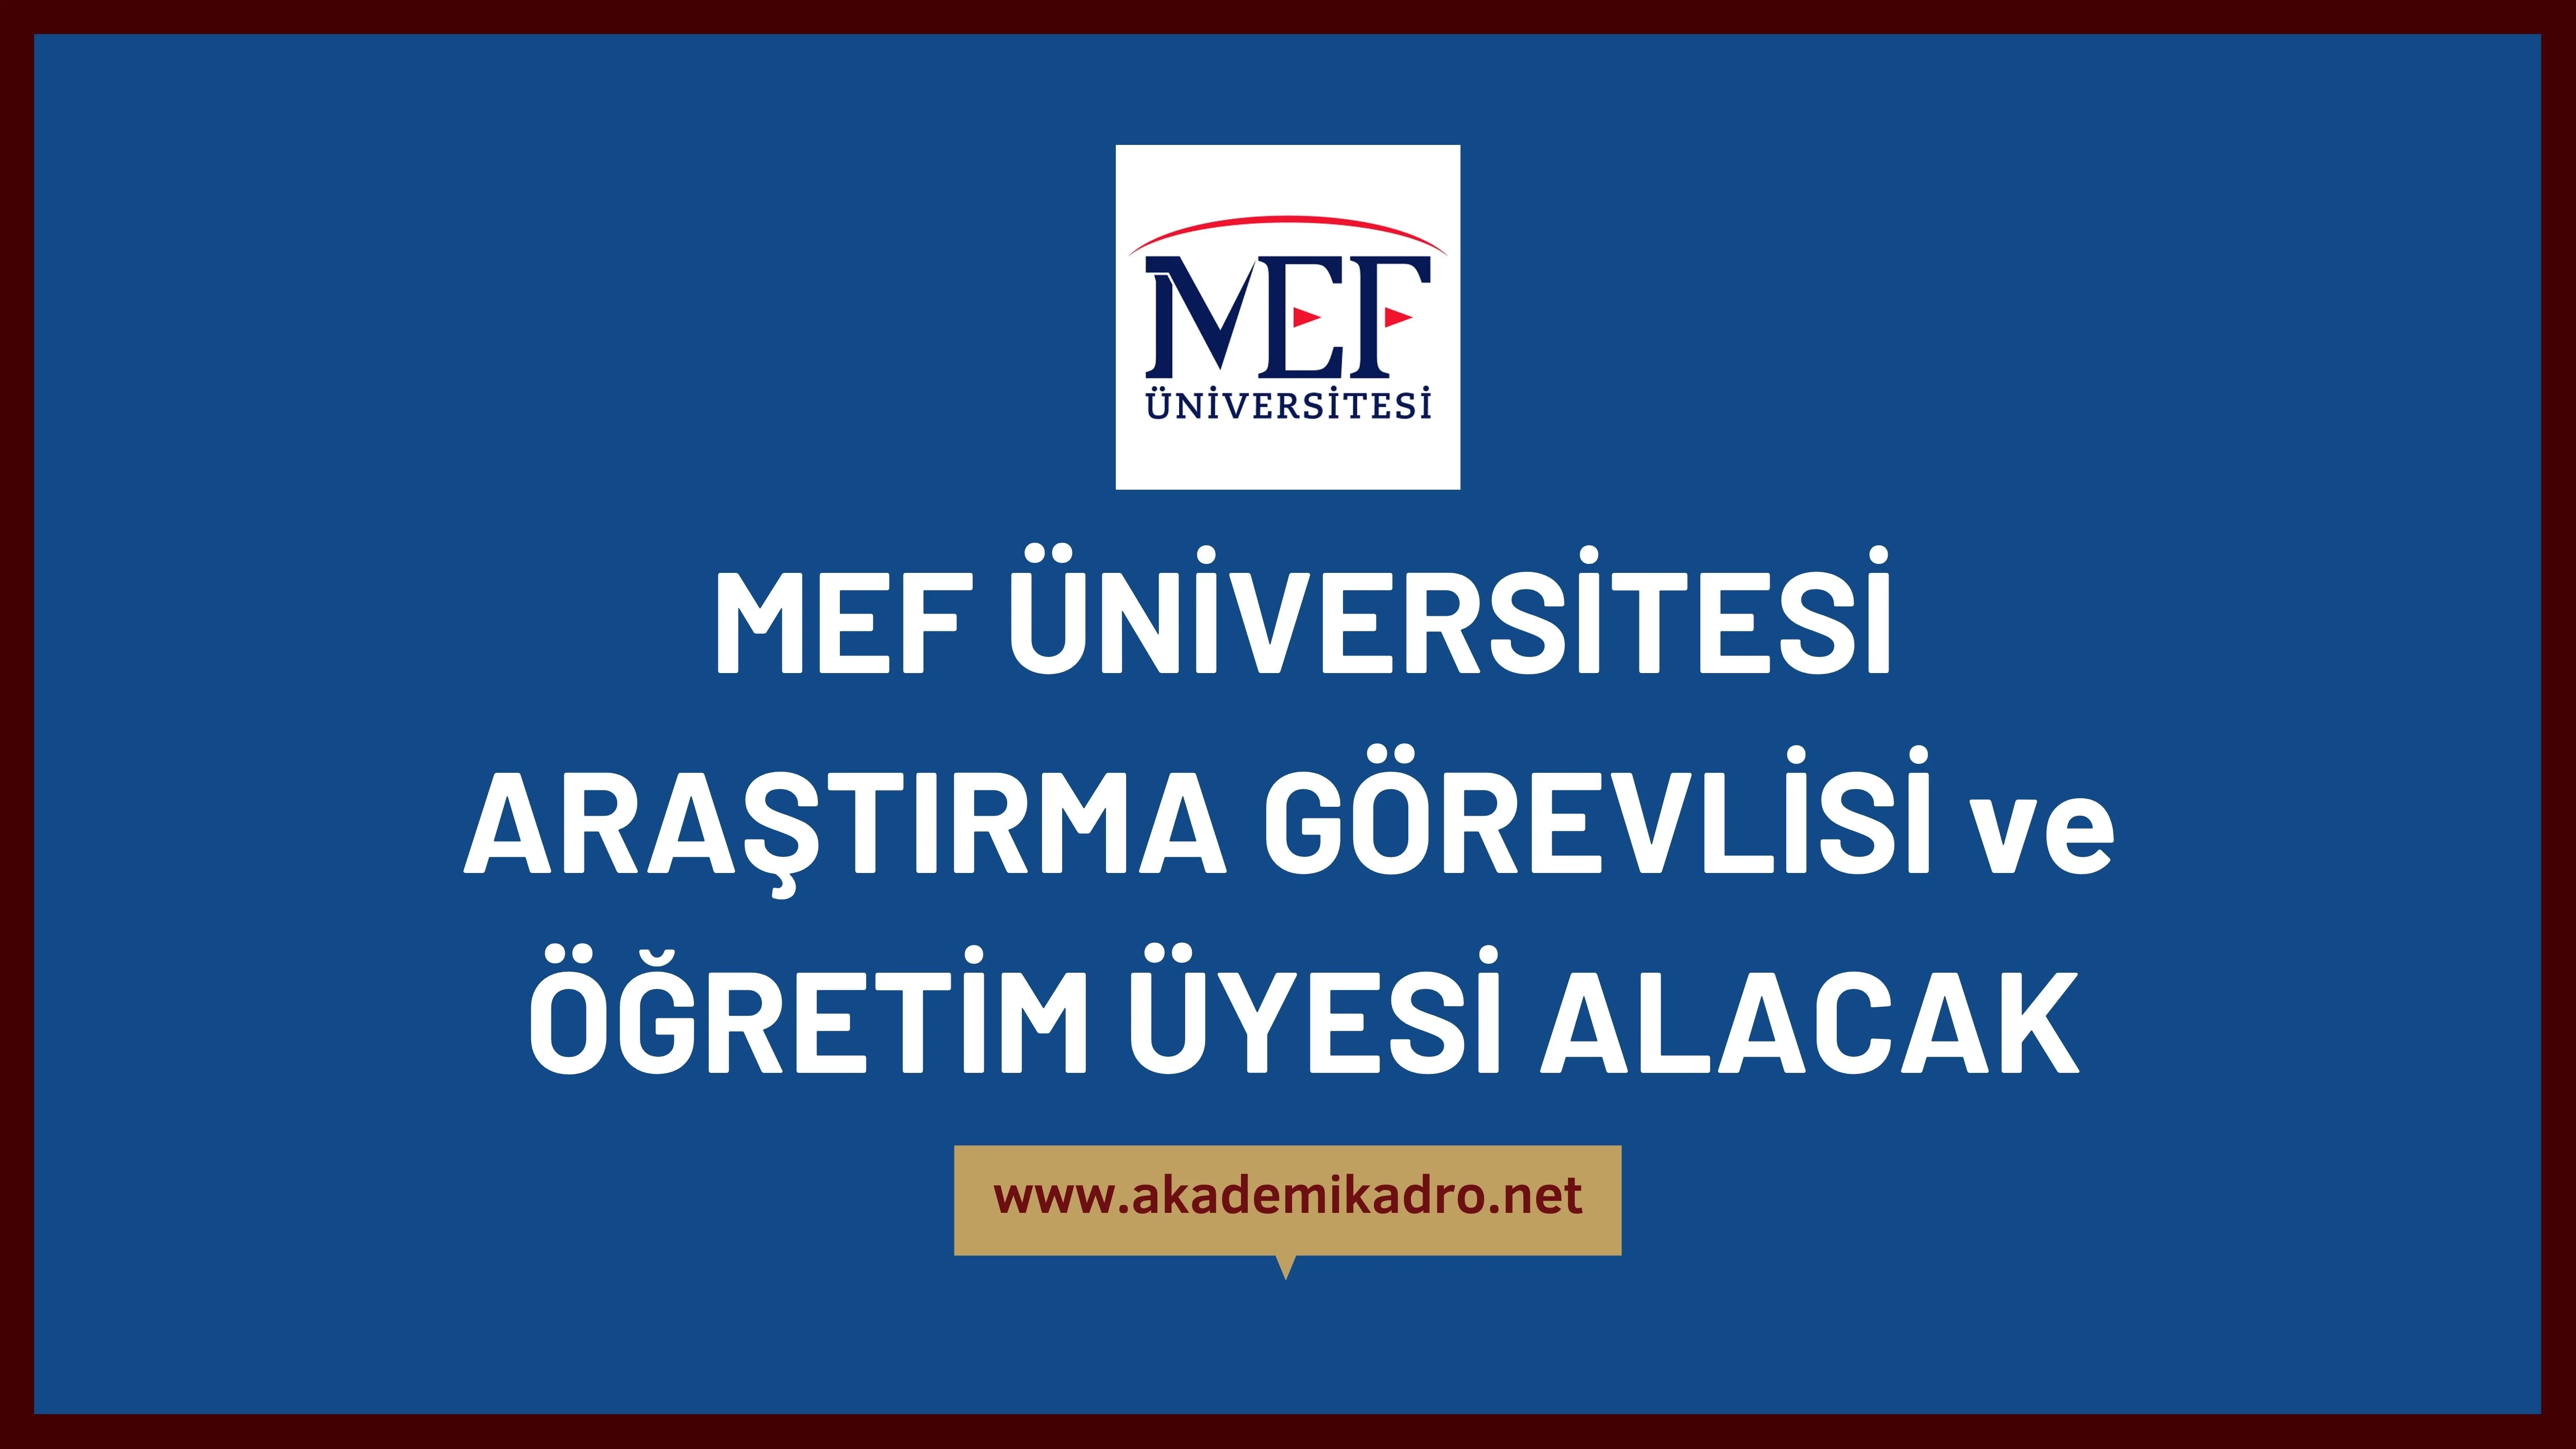 MEF Üniversitesi Araştırma görevlisi ve bir çok alandan öğretim üyesi olmak üzere 15 Öğretim elemanı alacak. Son başvuru tarihi 30 Aralık 2022.